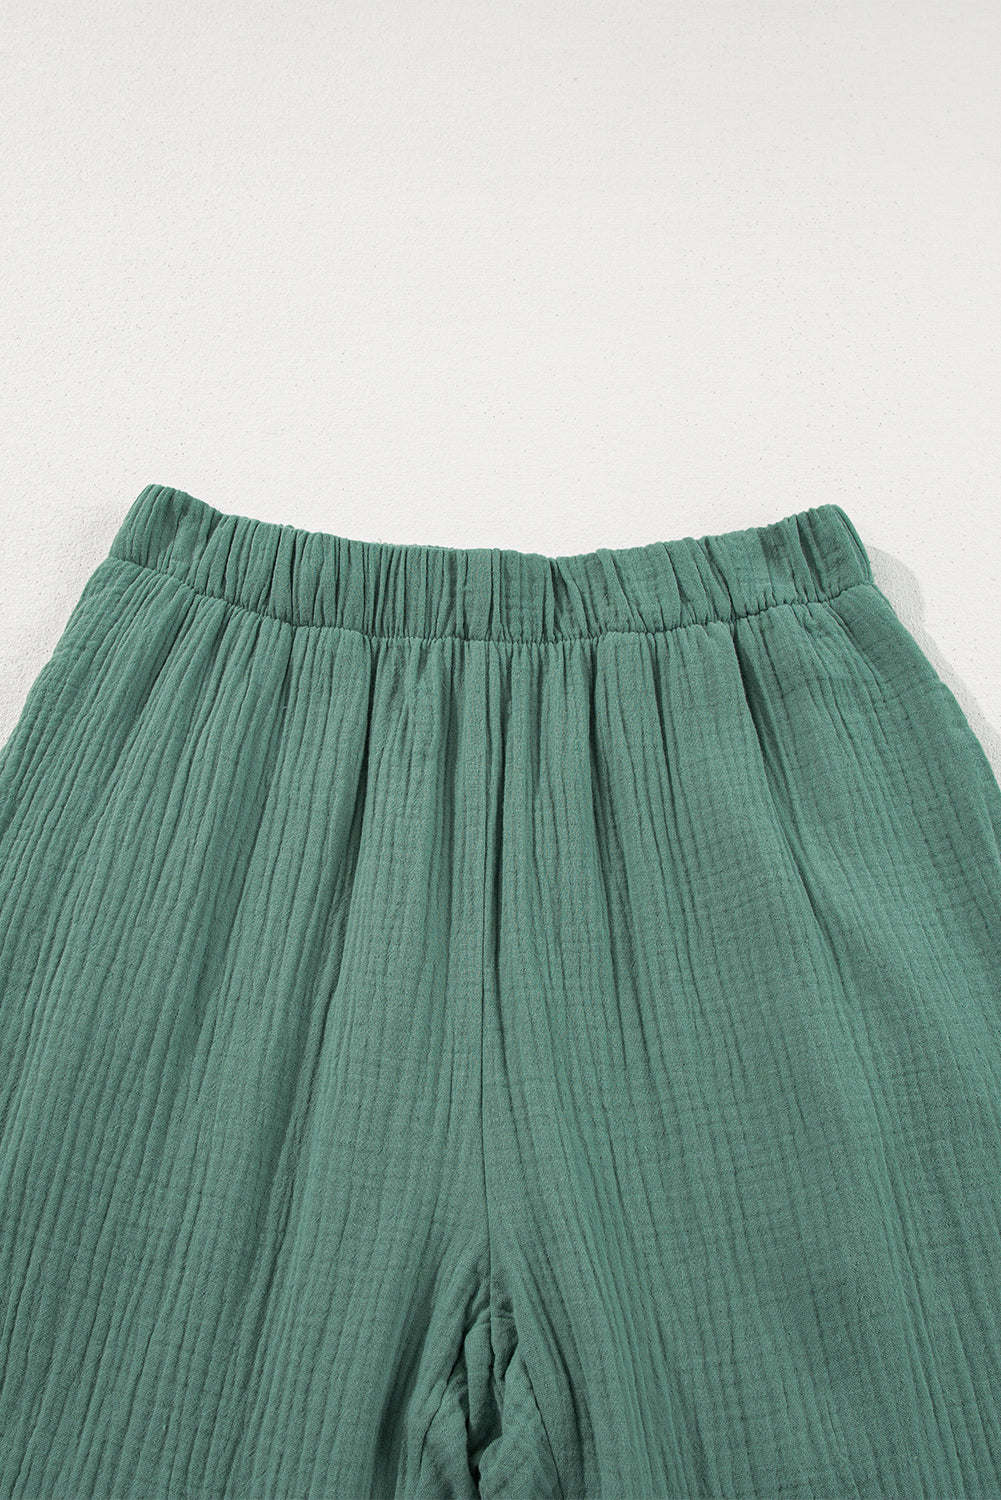 Green Textured High Waist Ruffled Bell Bottom Pants